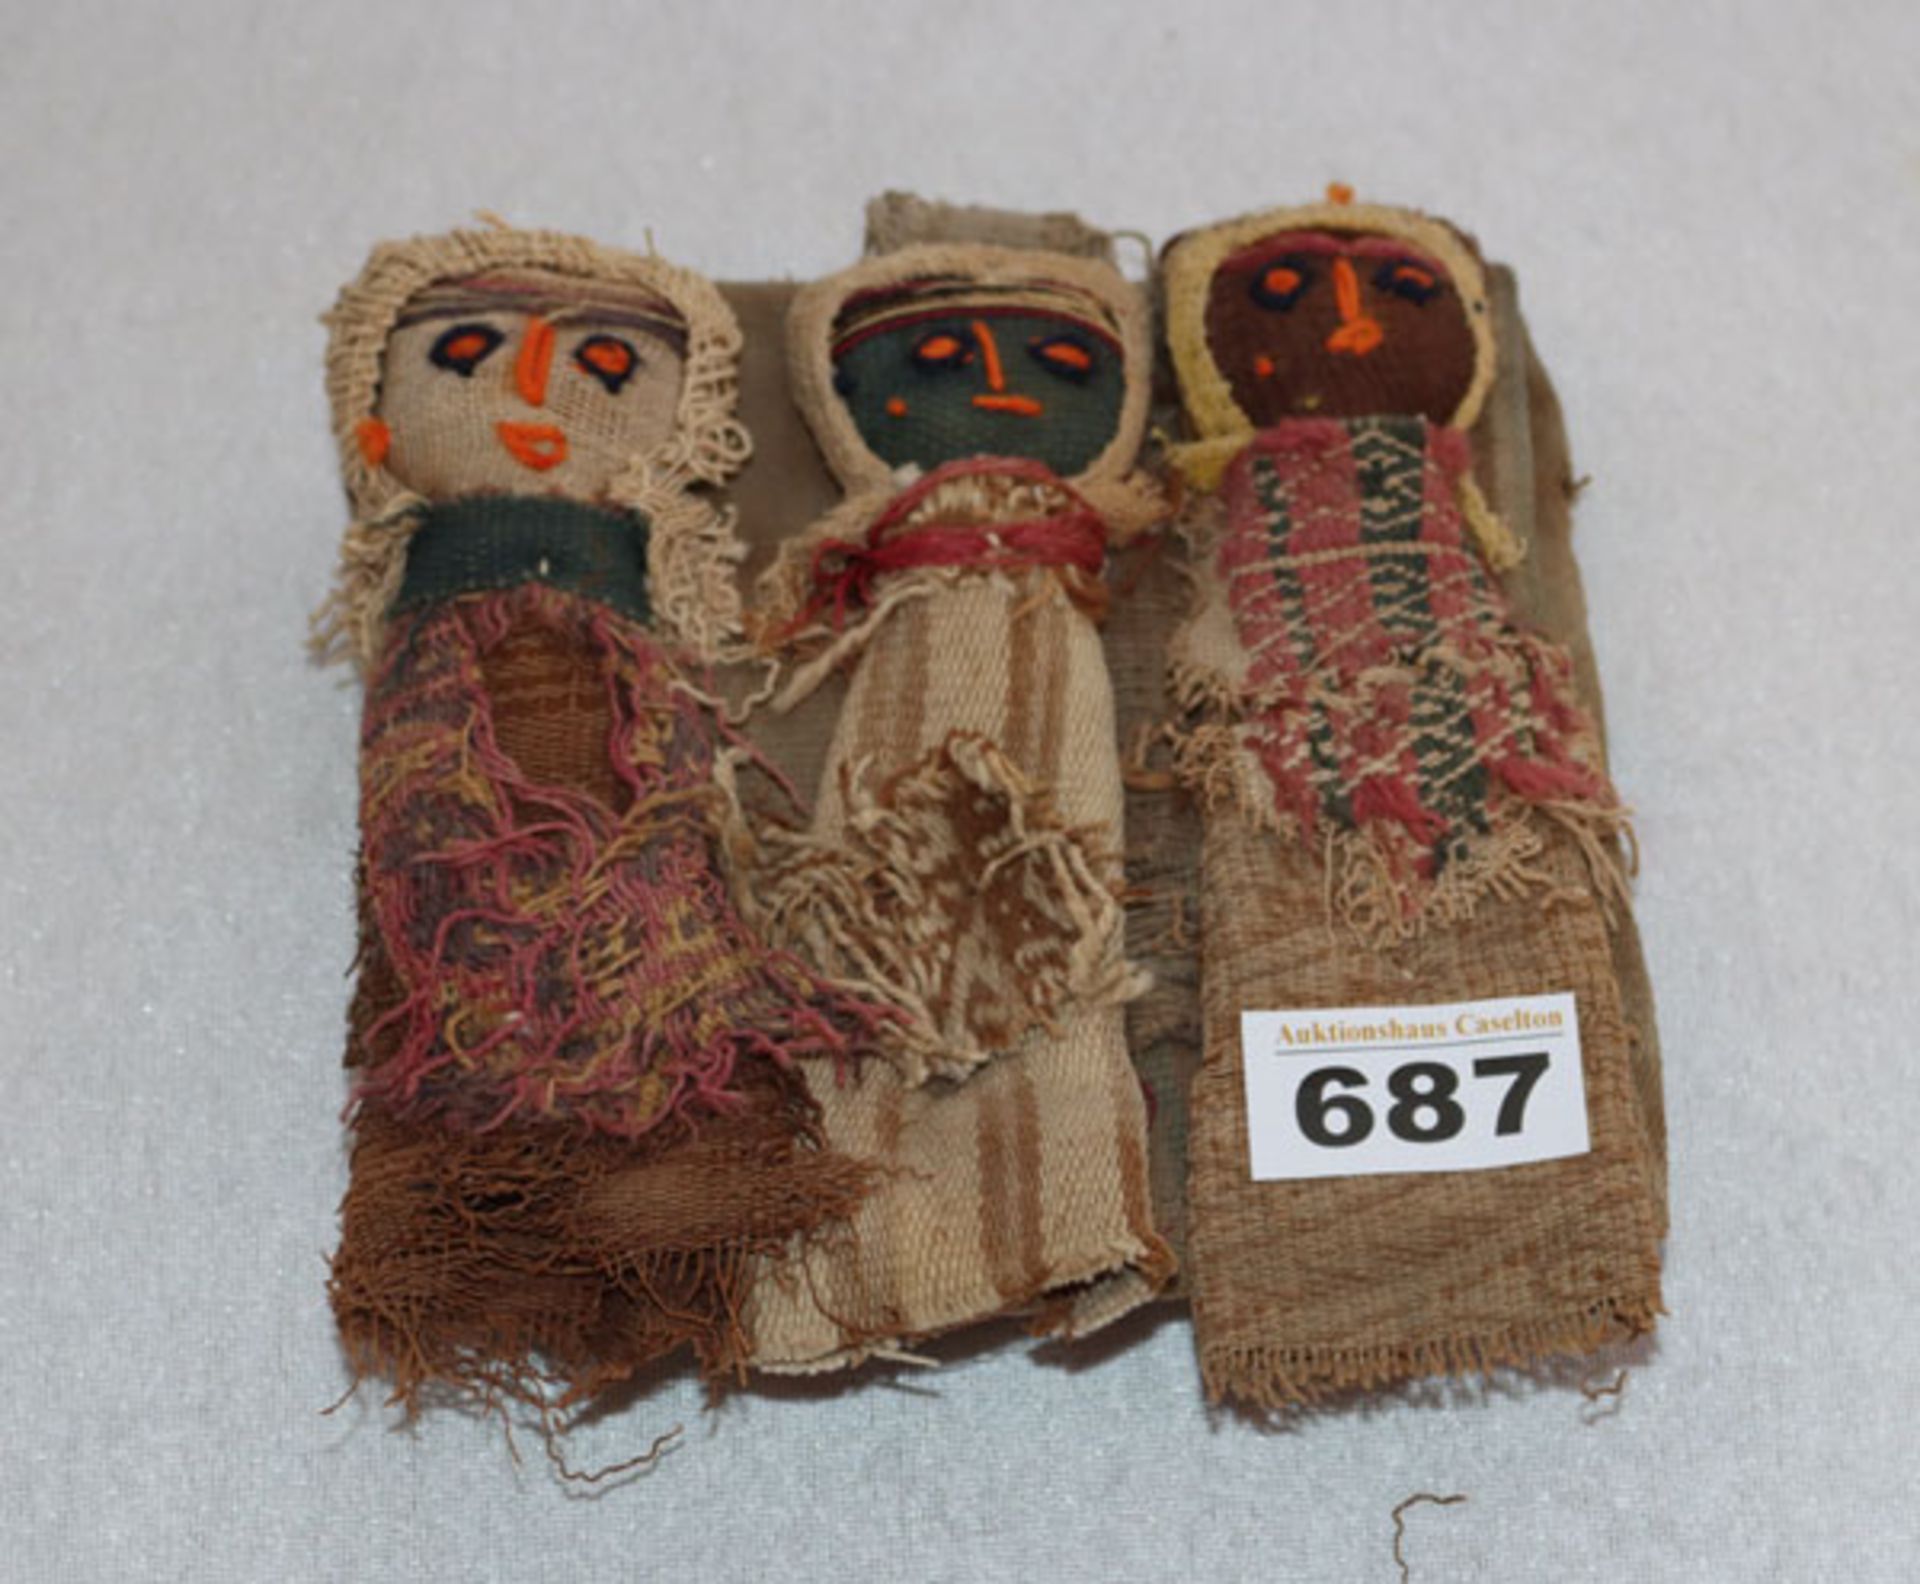 Grabbeigaben-Puppen der Chancay, Peru, Alter unbekannt, 3 Puppen aus verschiedenen alten